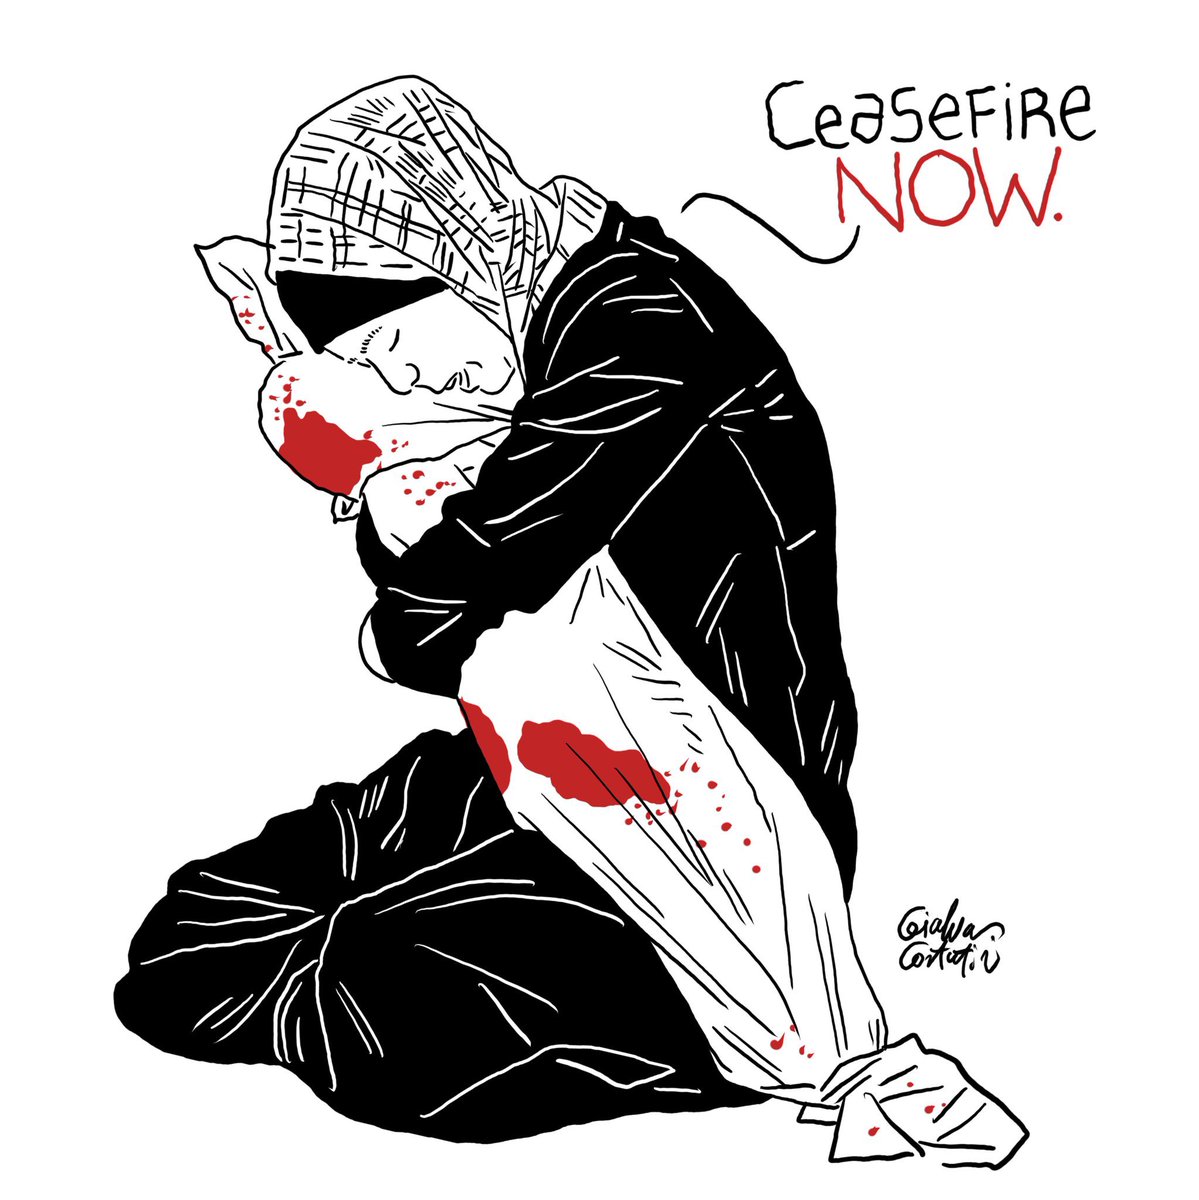 Quant dolor més els caldrà patir als palestins abans d’aturar la barbàrie? #AturemElGenocidi #CeasefireNOW